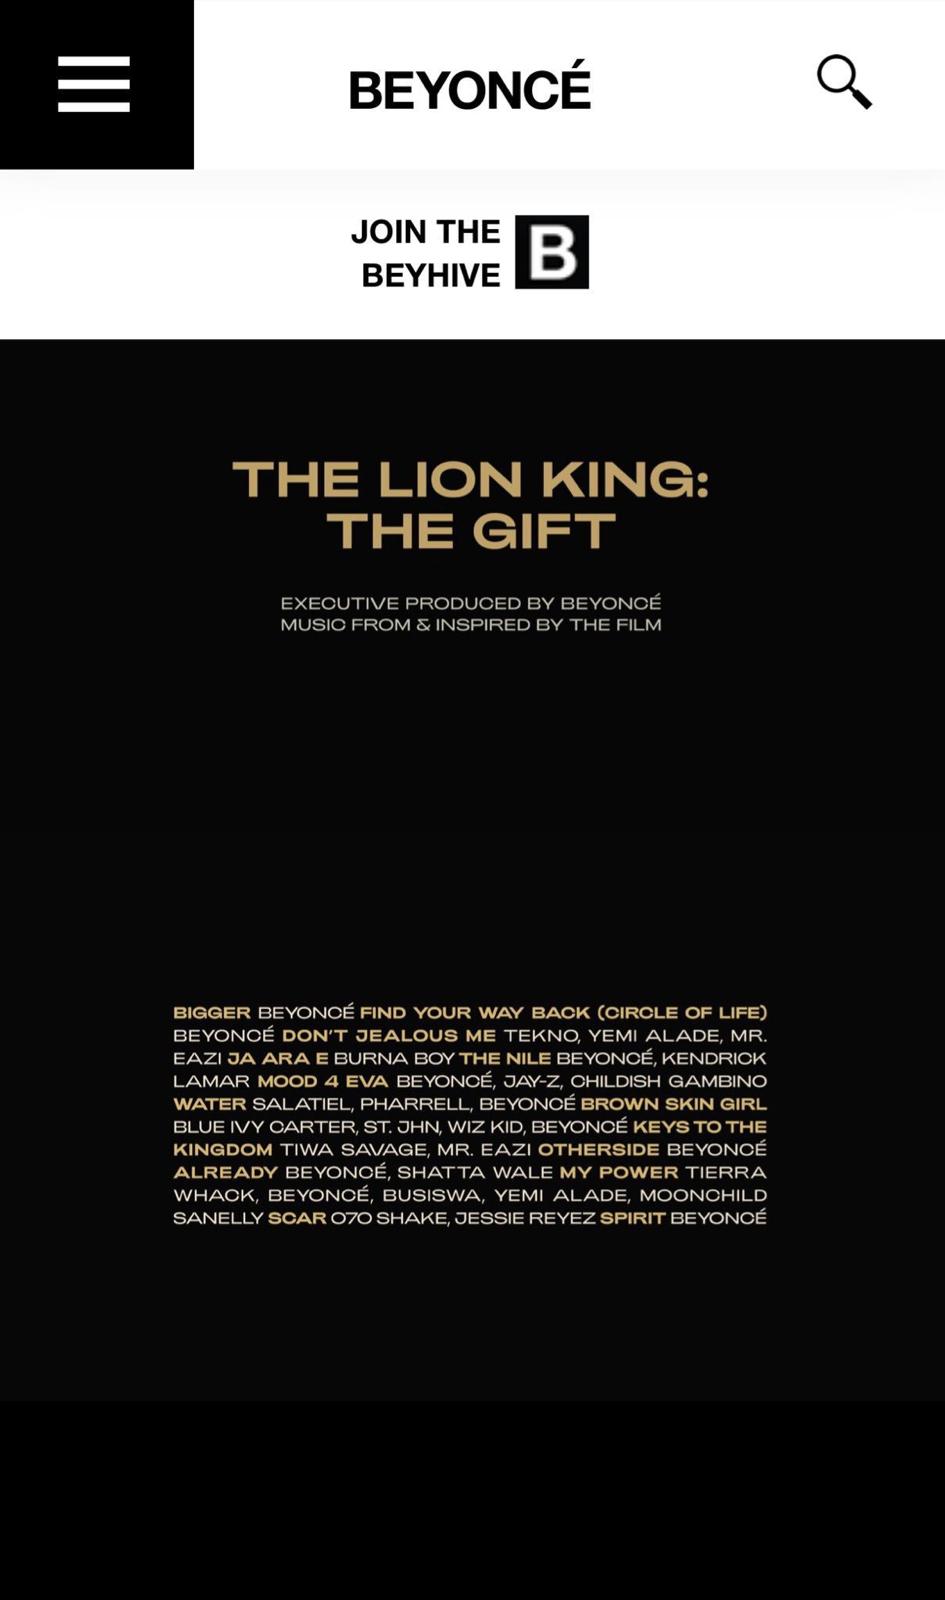  https://www.concoursemediagroup.com/beyonce-features…-lion-king-album/